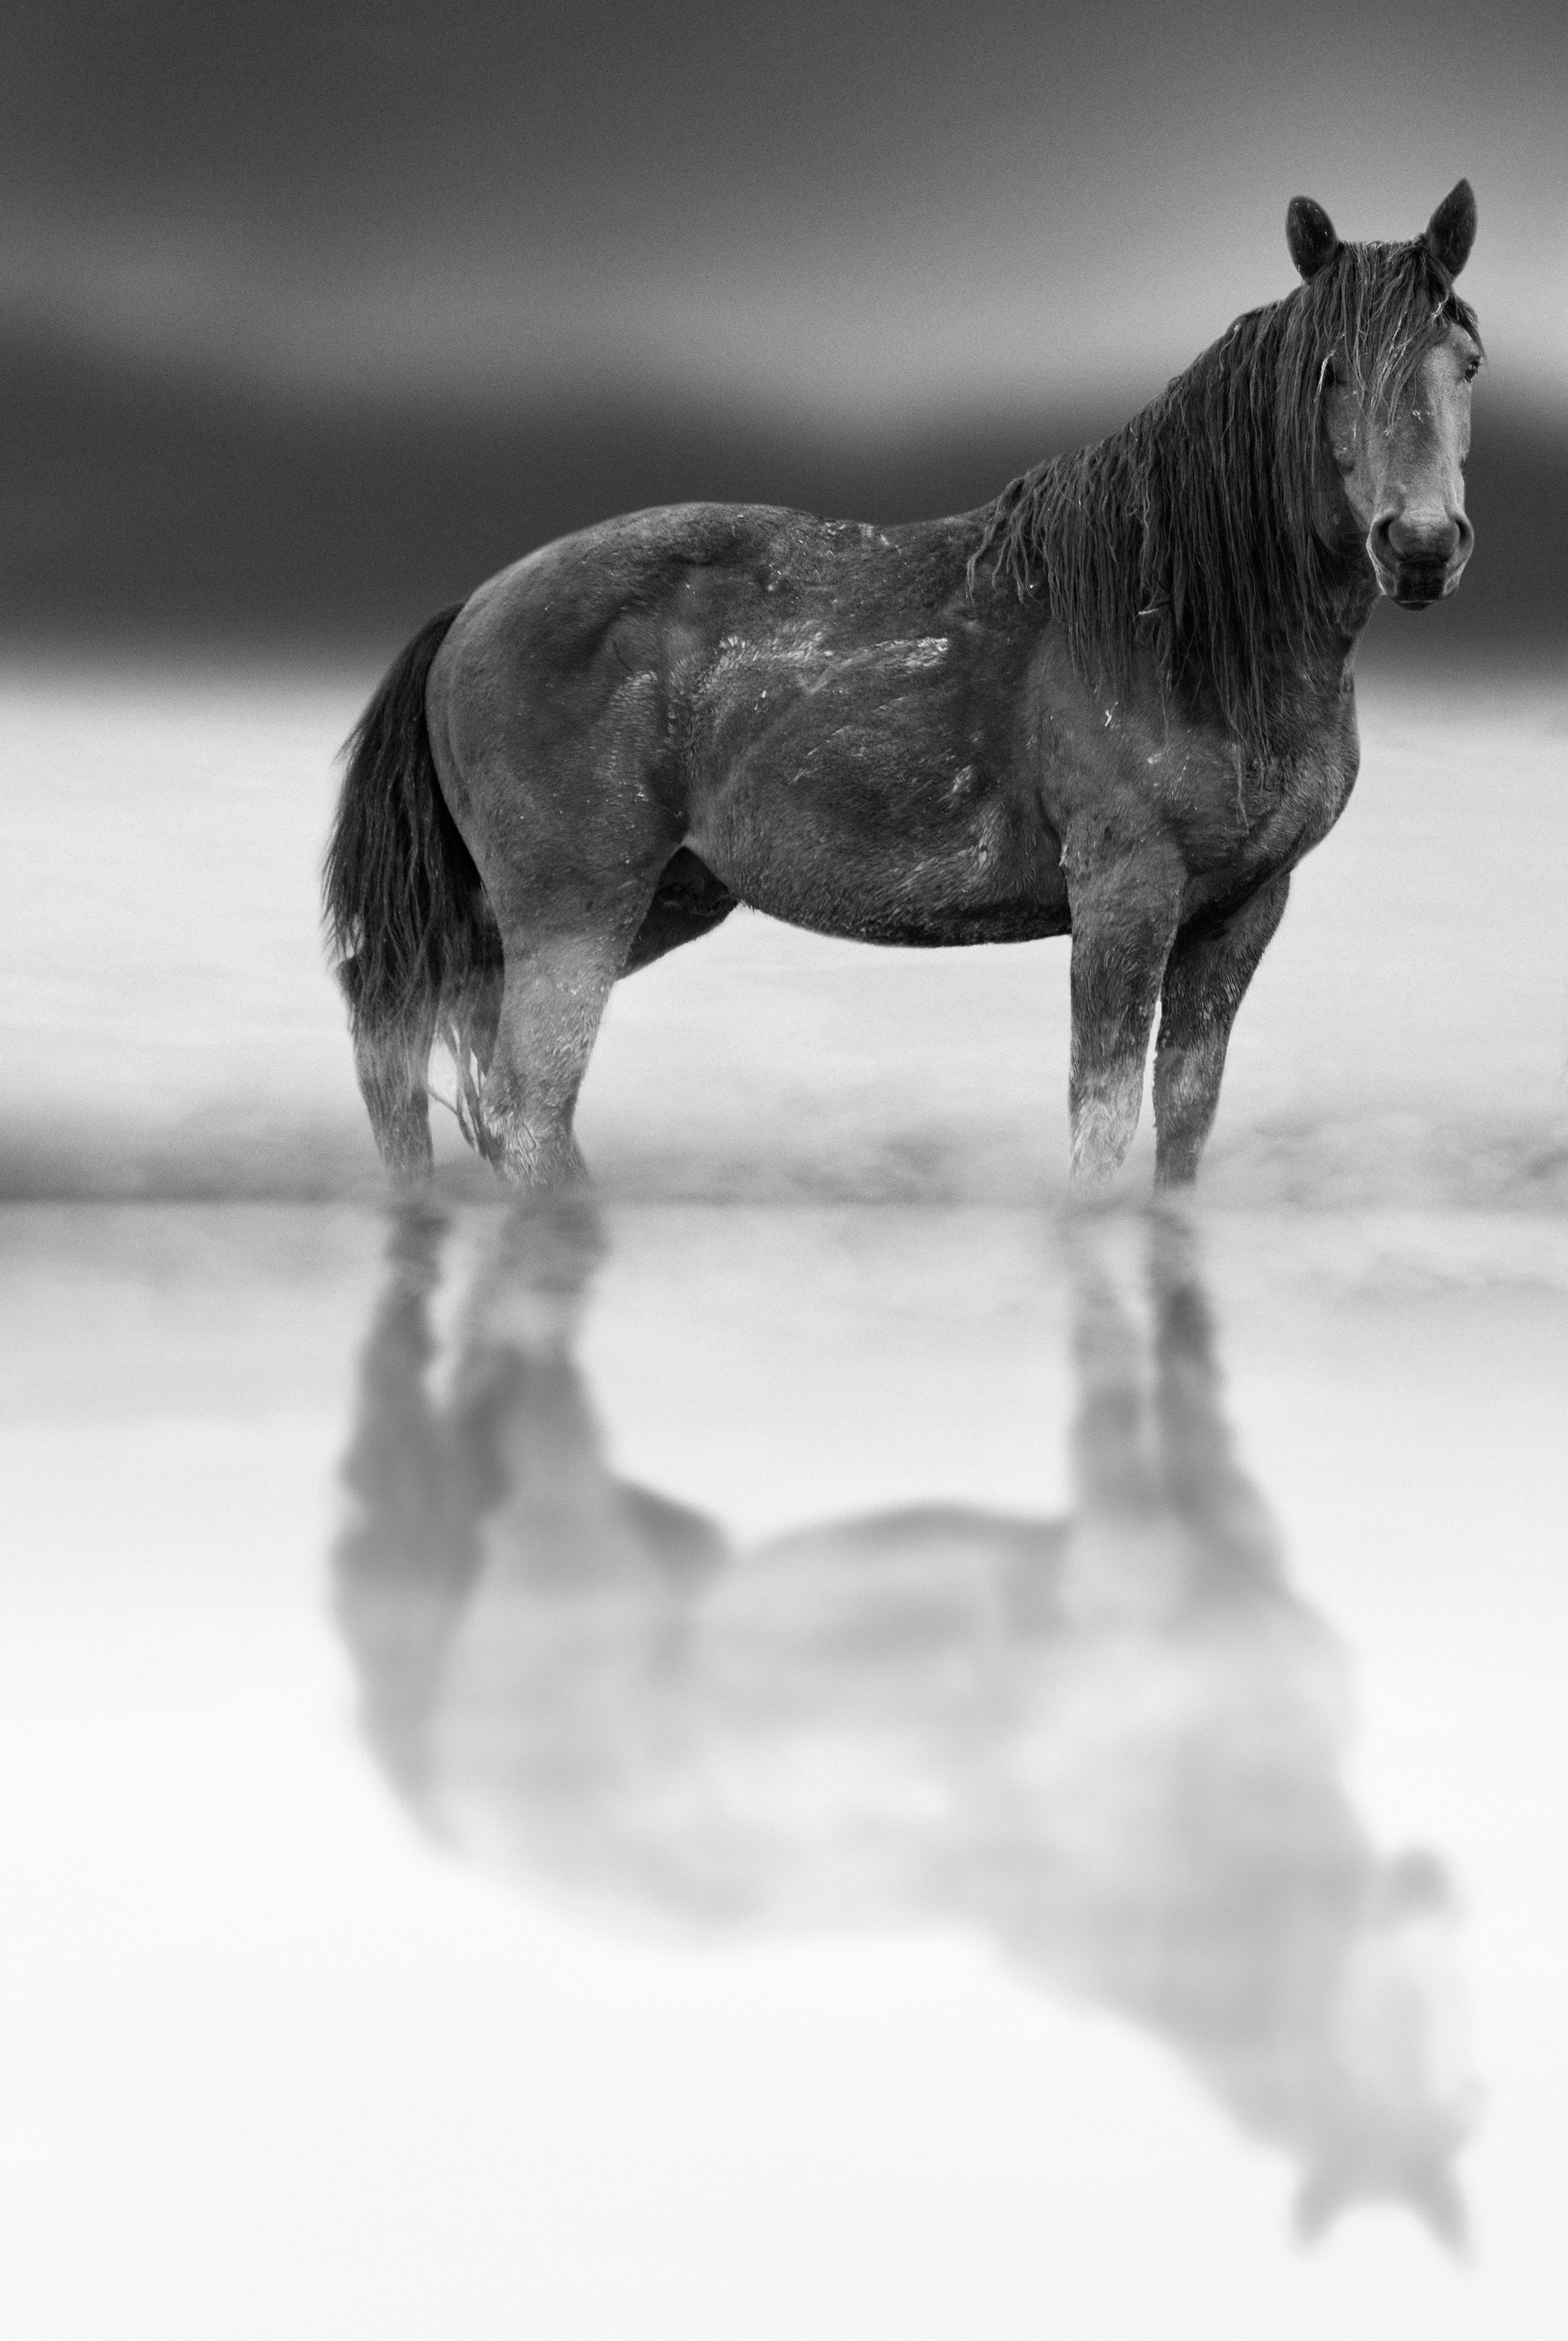 Black and White Photograph Shane Russeck - "Belle Starr" 60 x 40 - Photographie de cheval sauvage - Photographie d'art non signée